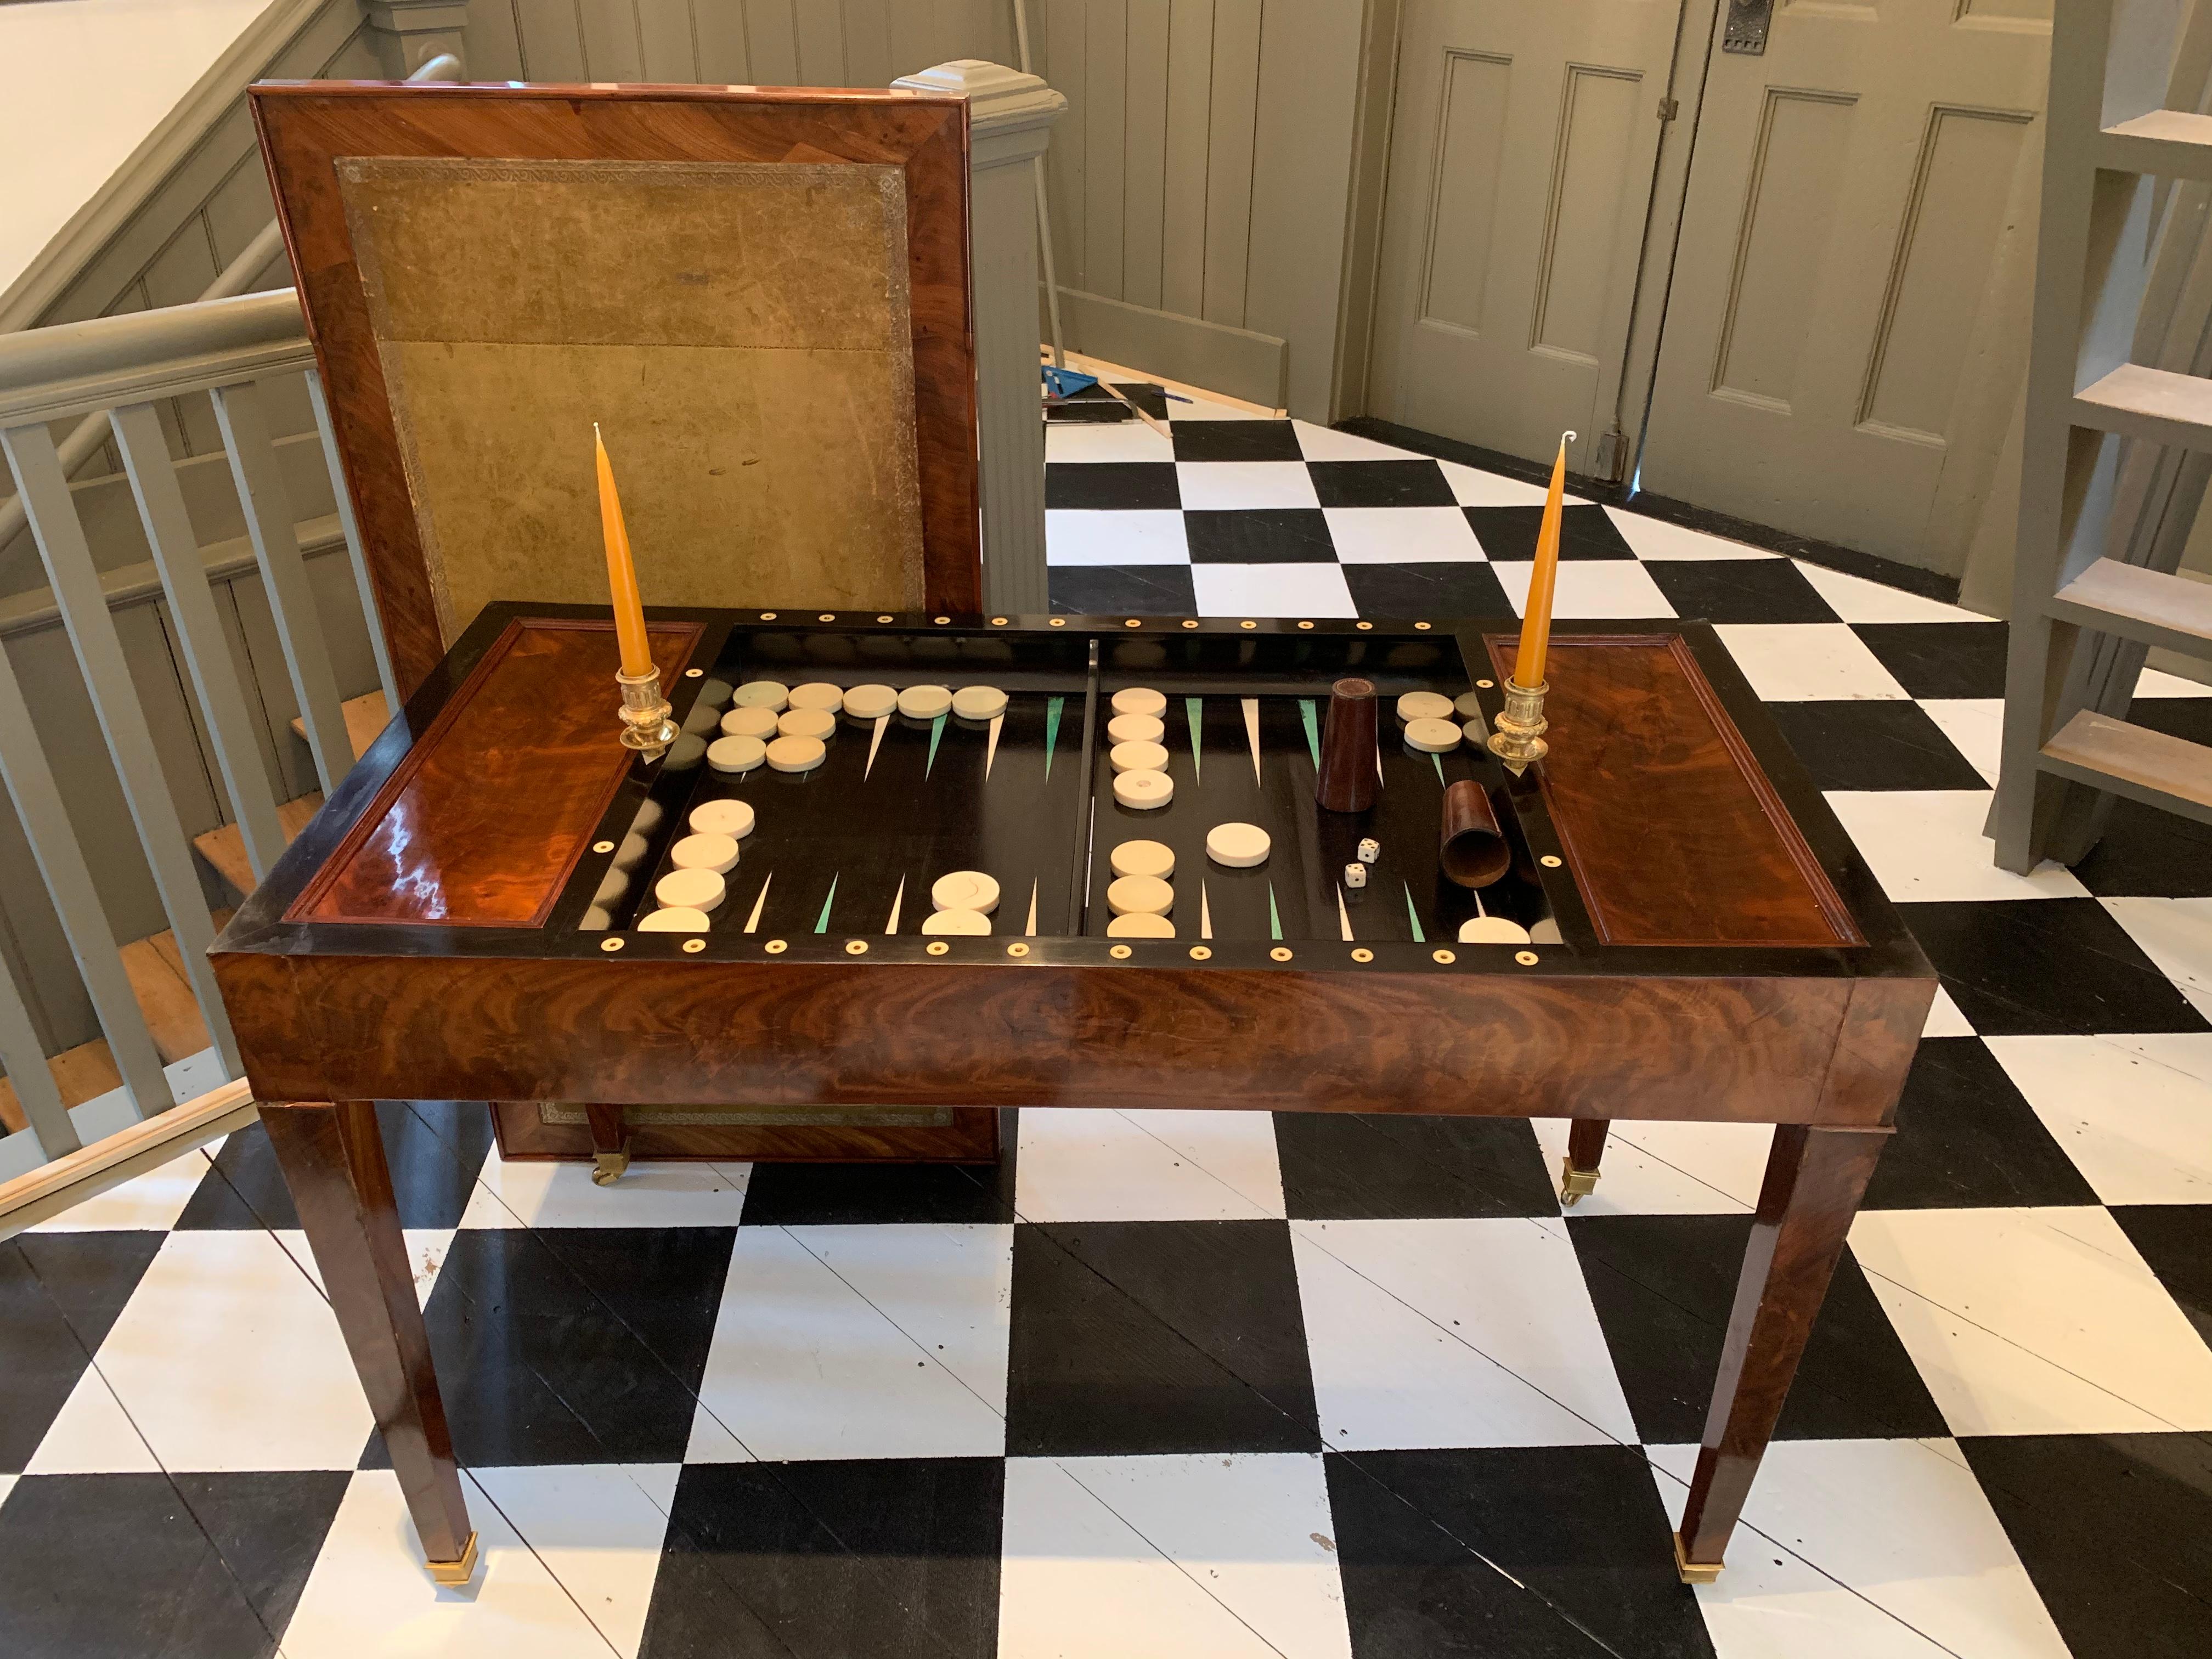 tric trac vs backgammon